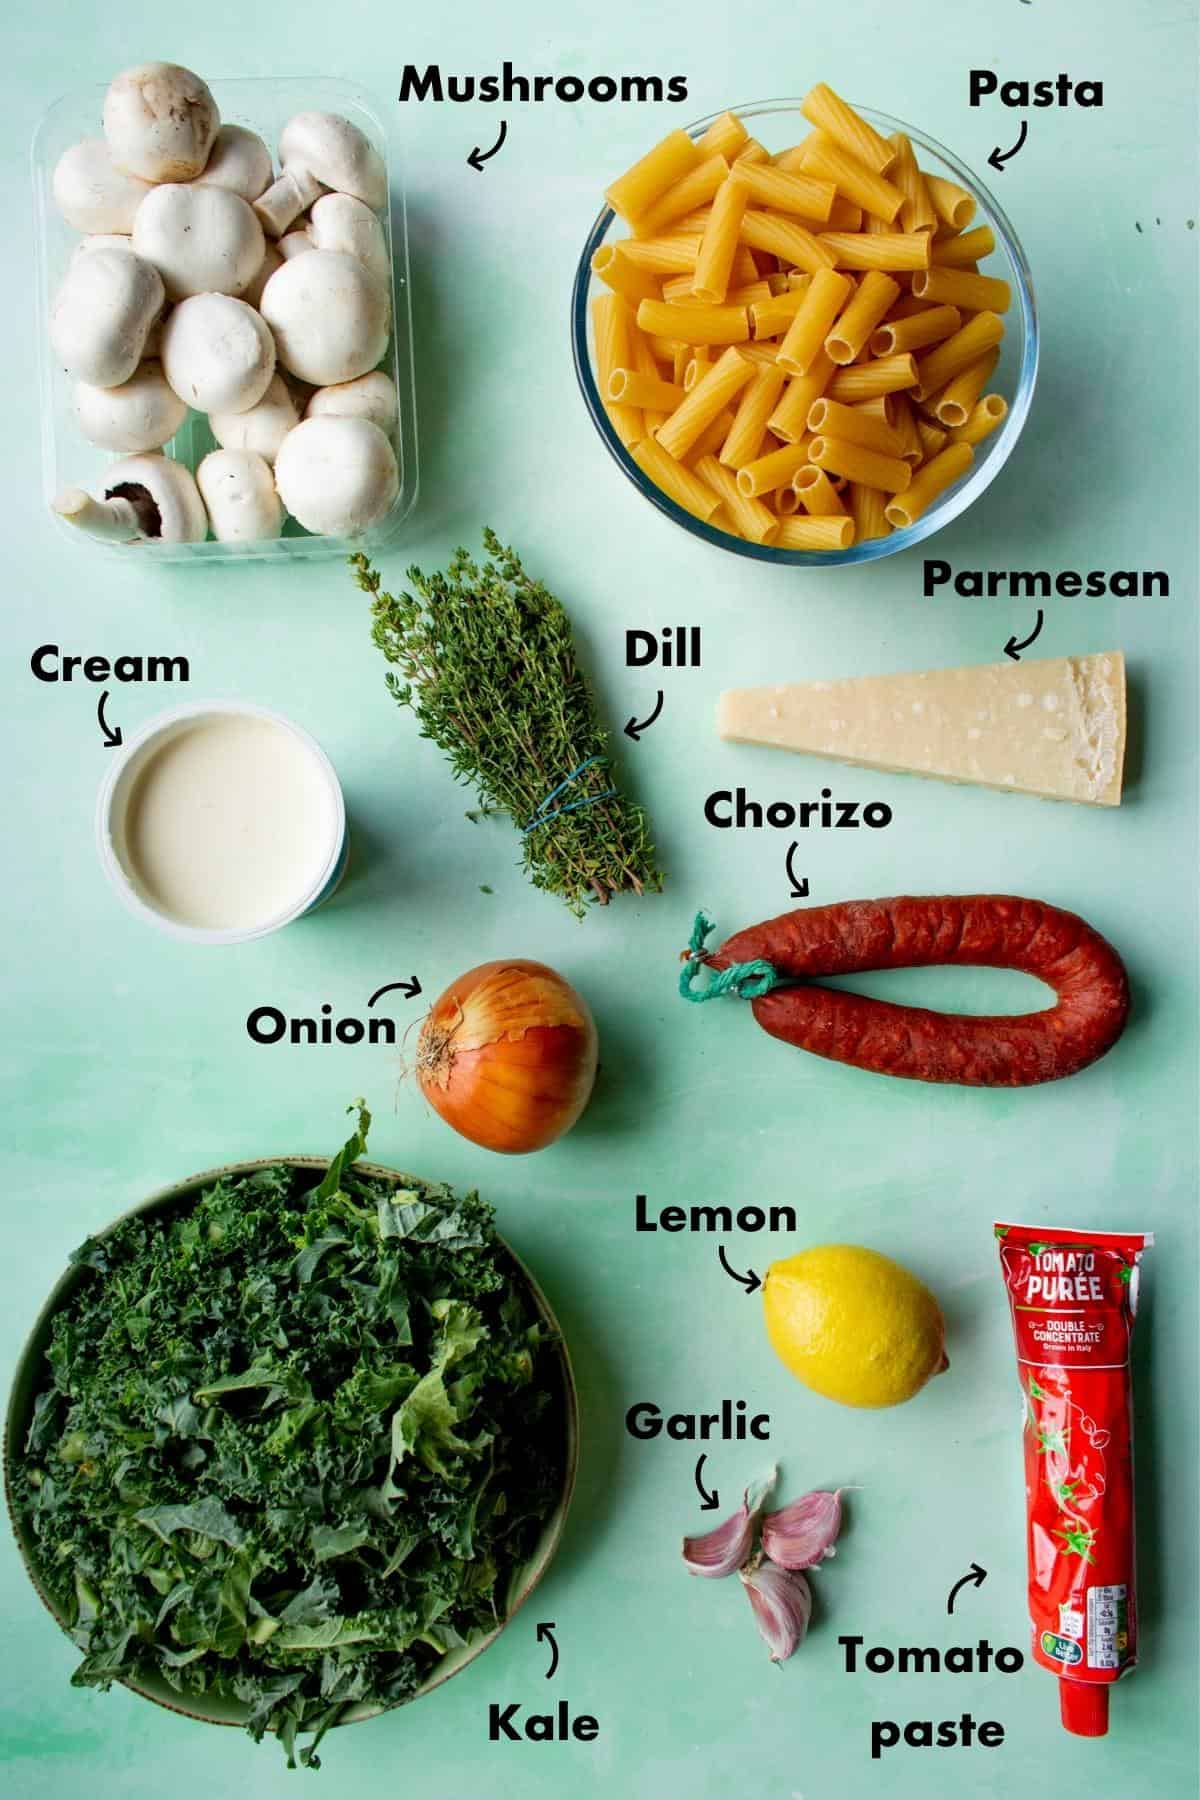 CHorizo pasta ingredients shot